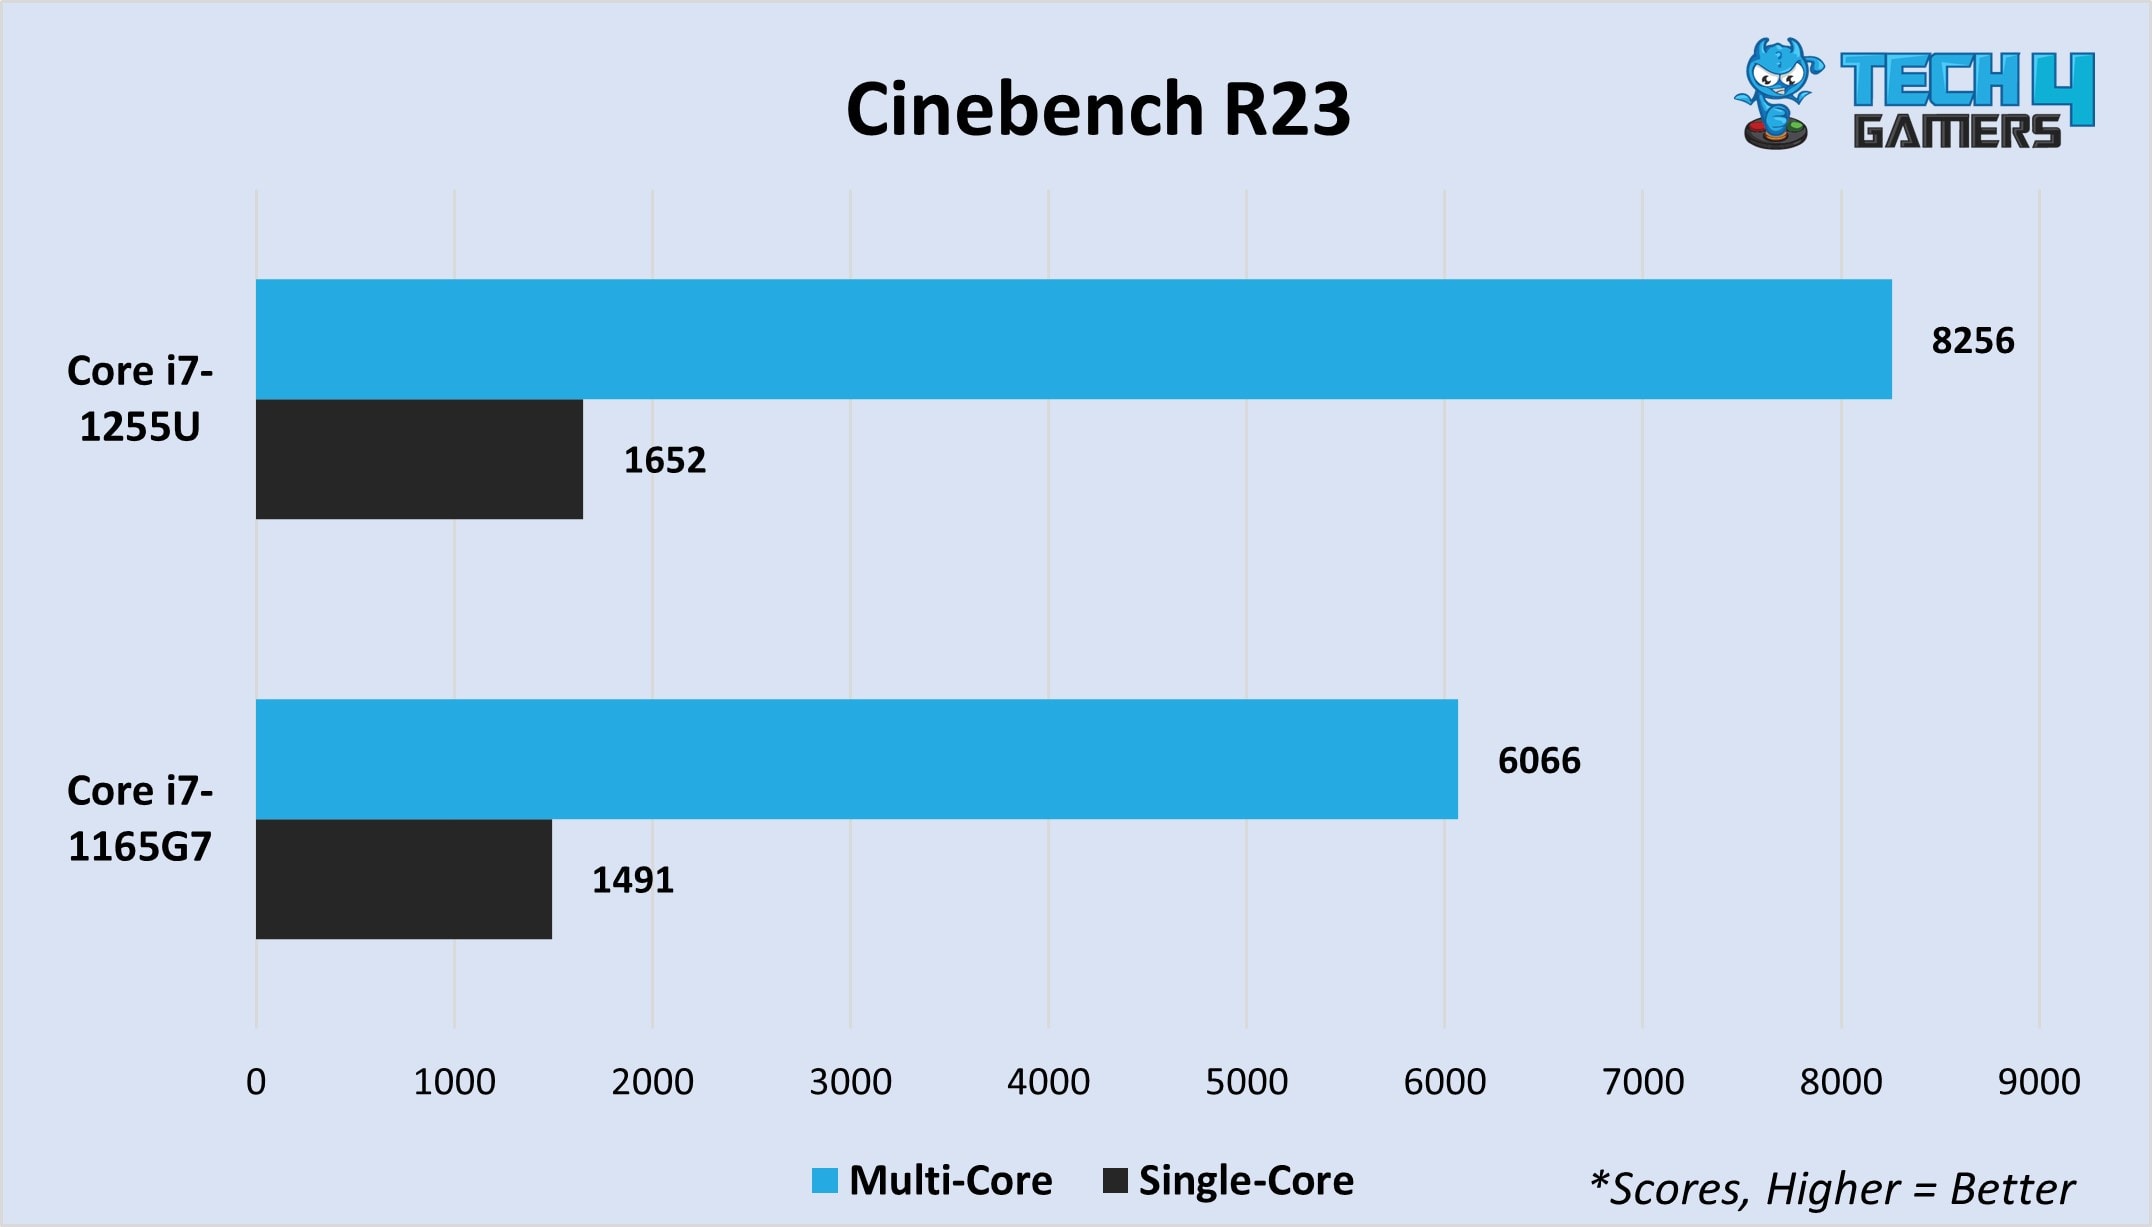 Cinebench R23 (multi-core and single-core)